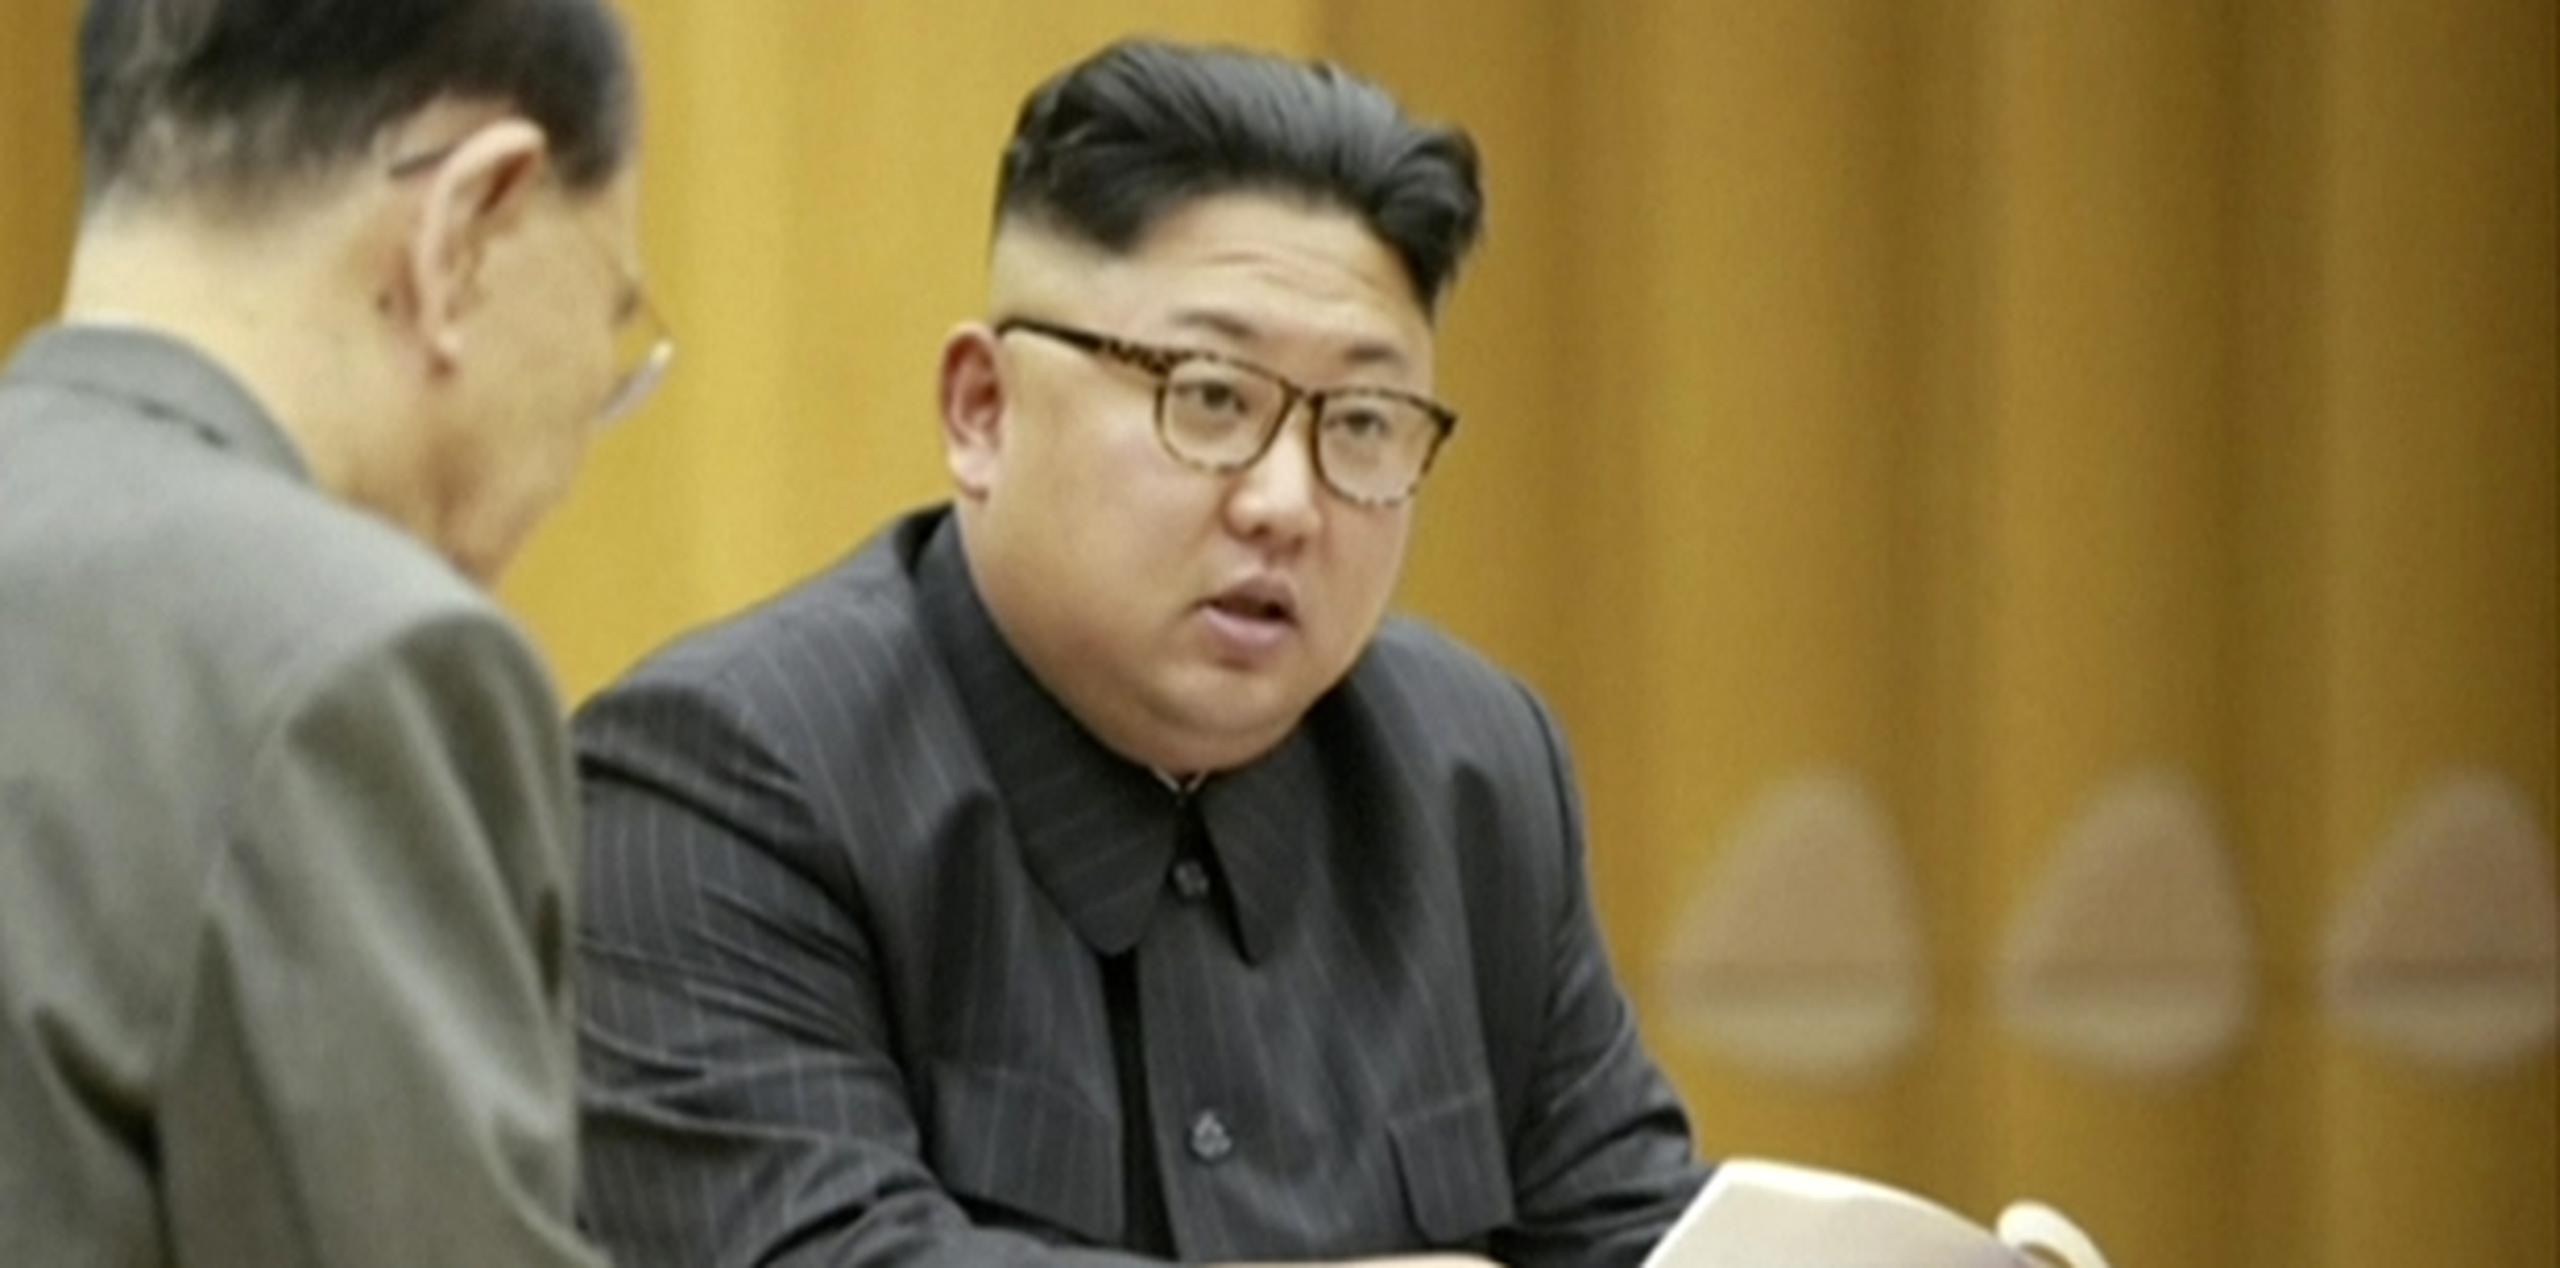 Por su parte, la vecina Corea del Sur se mantiene hoy alerta y observa cualquier signo que indique que el régimen de Kim Jong-un (en la foto) pueda llevar a cabo nuevas provocaciones. (Archivo)